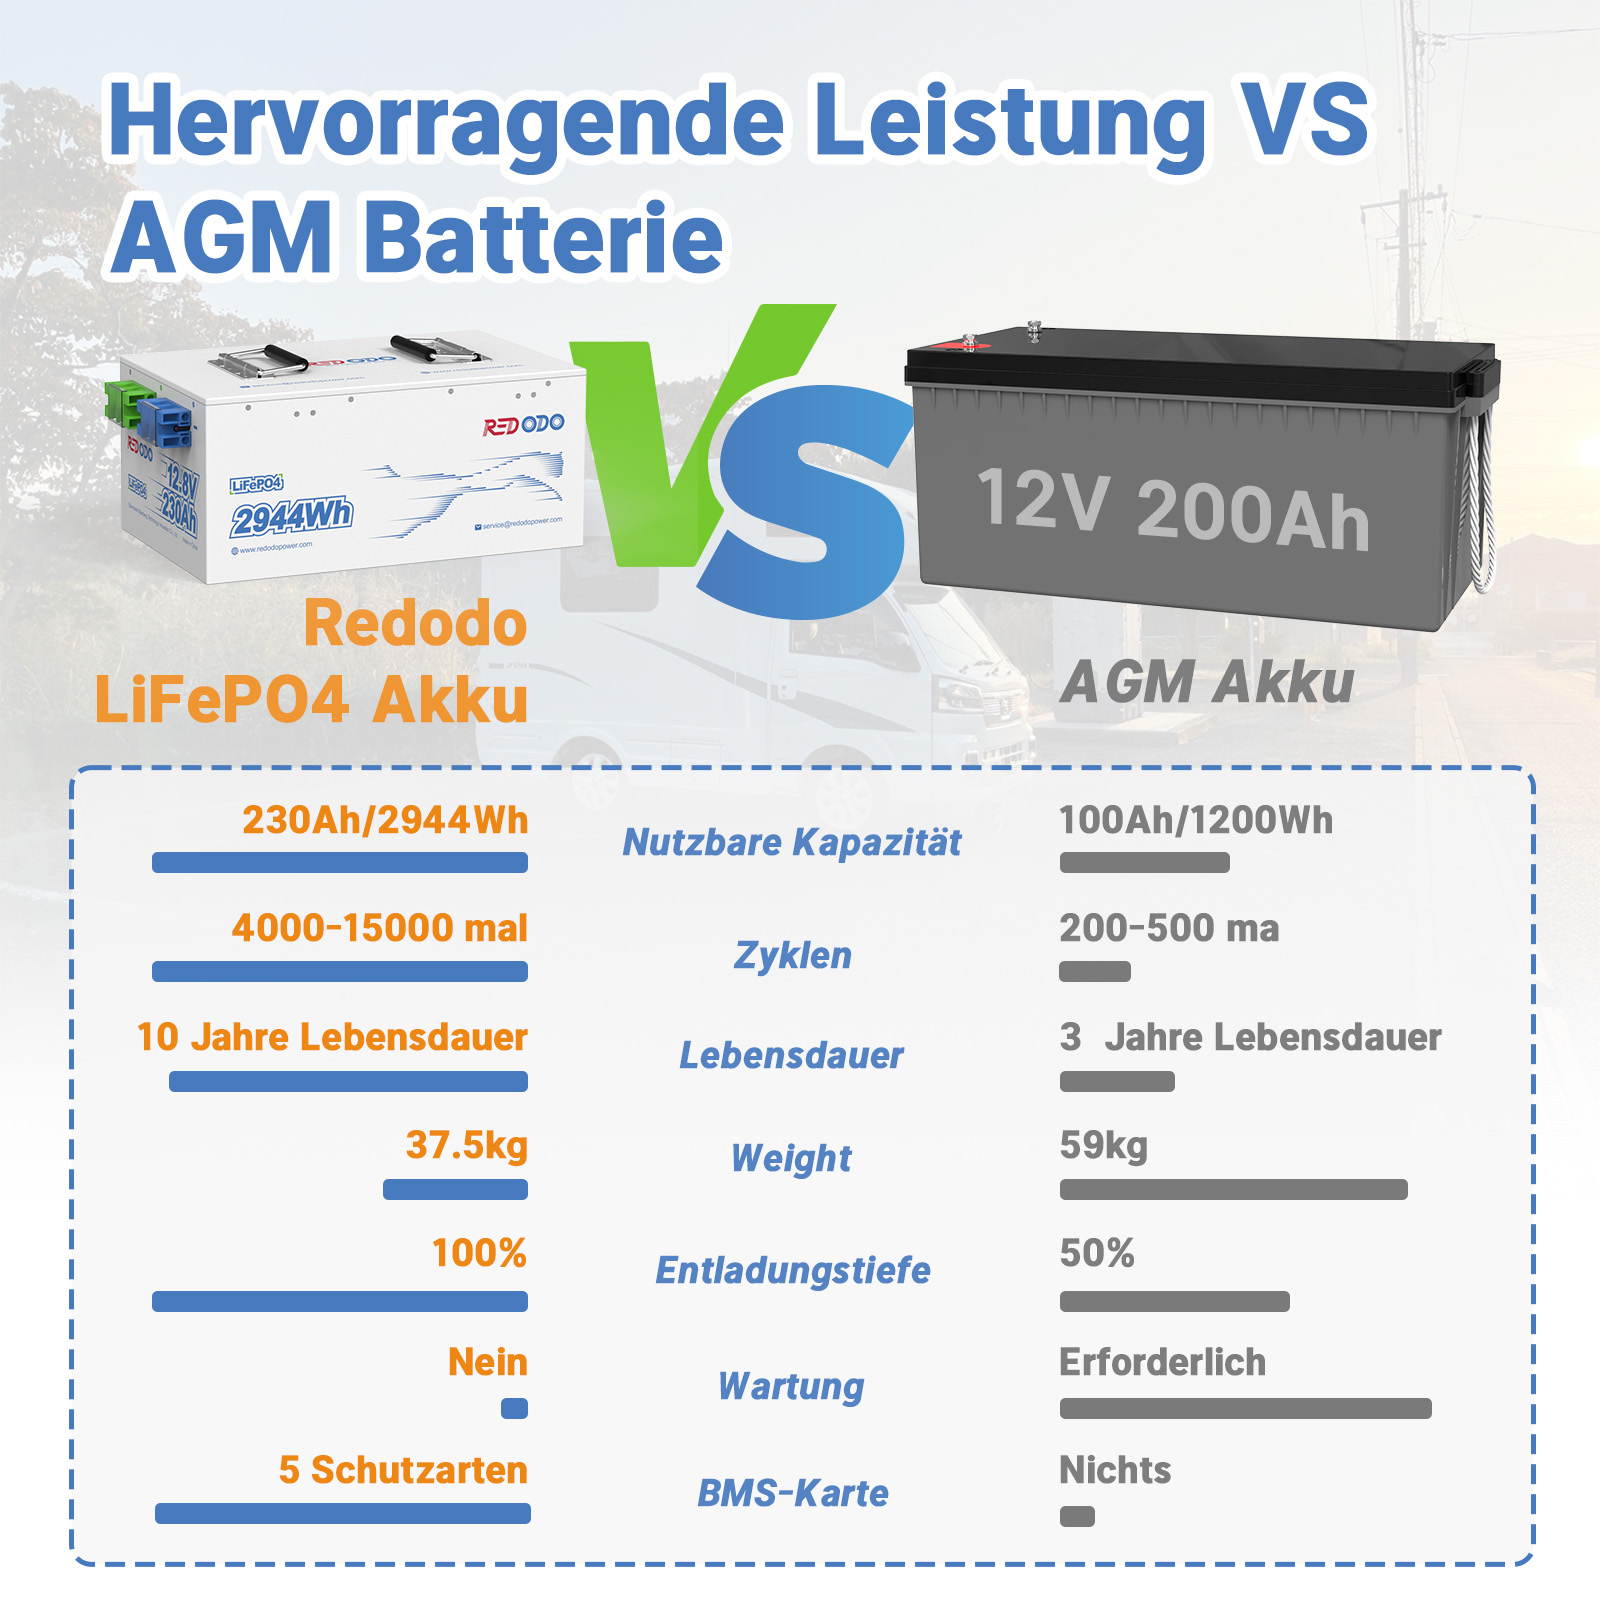 Befreiung von 19% MwSt - Redodo 12V 230Ah LiFePO4 Batterie | 2944Wh & 1920W - nur für Wohngebäude und Deutschland